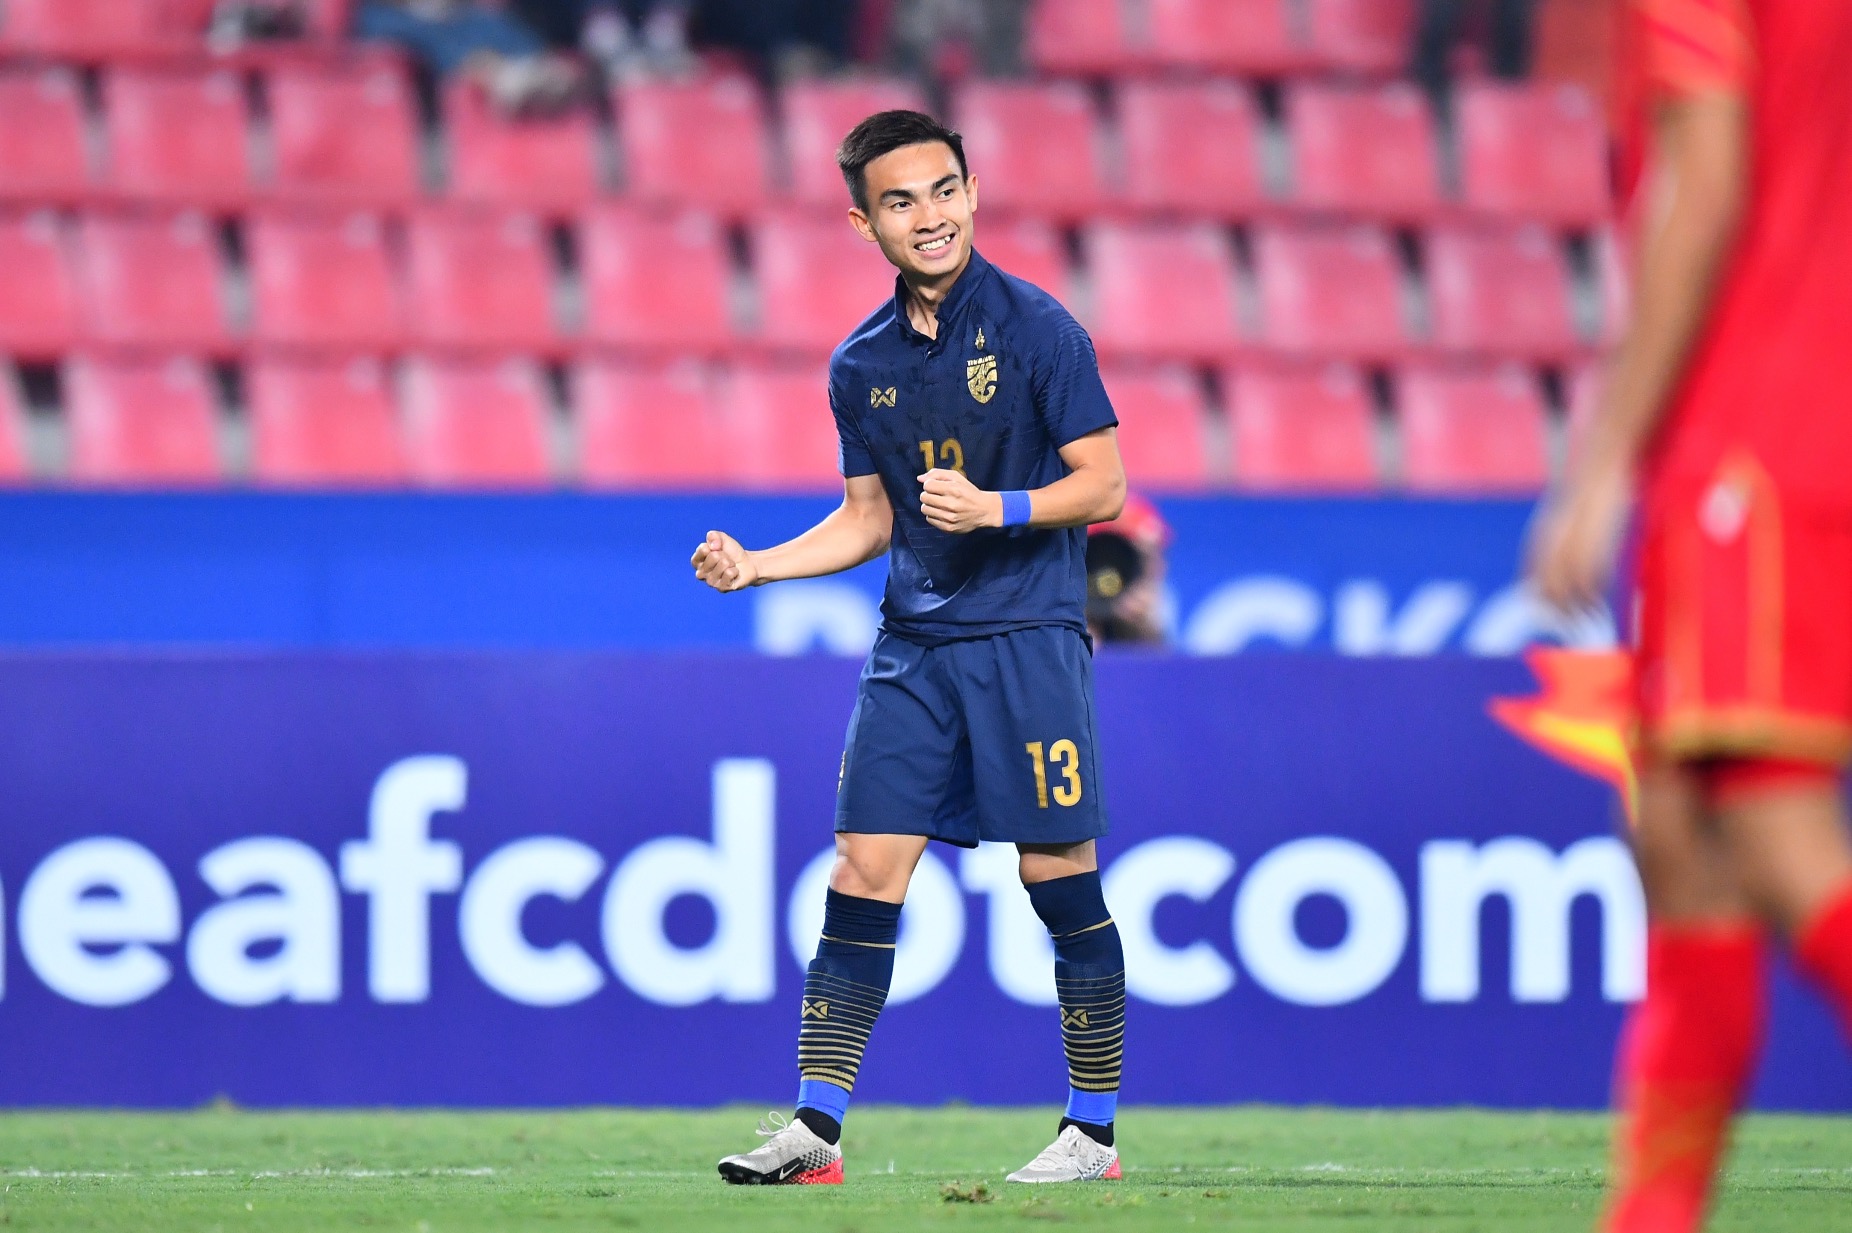 Jaroensak là vua phá lưới giải U23 châu Á 2020 với 3 bàn thắng cho U23 Thái Lan. Ảnh: AFC.